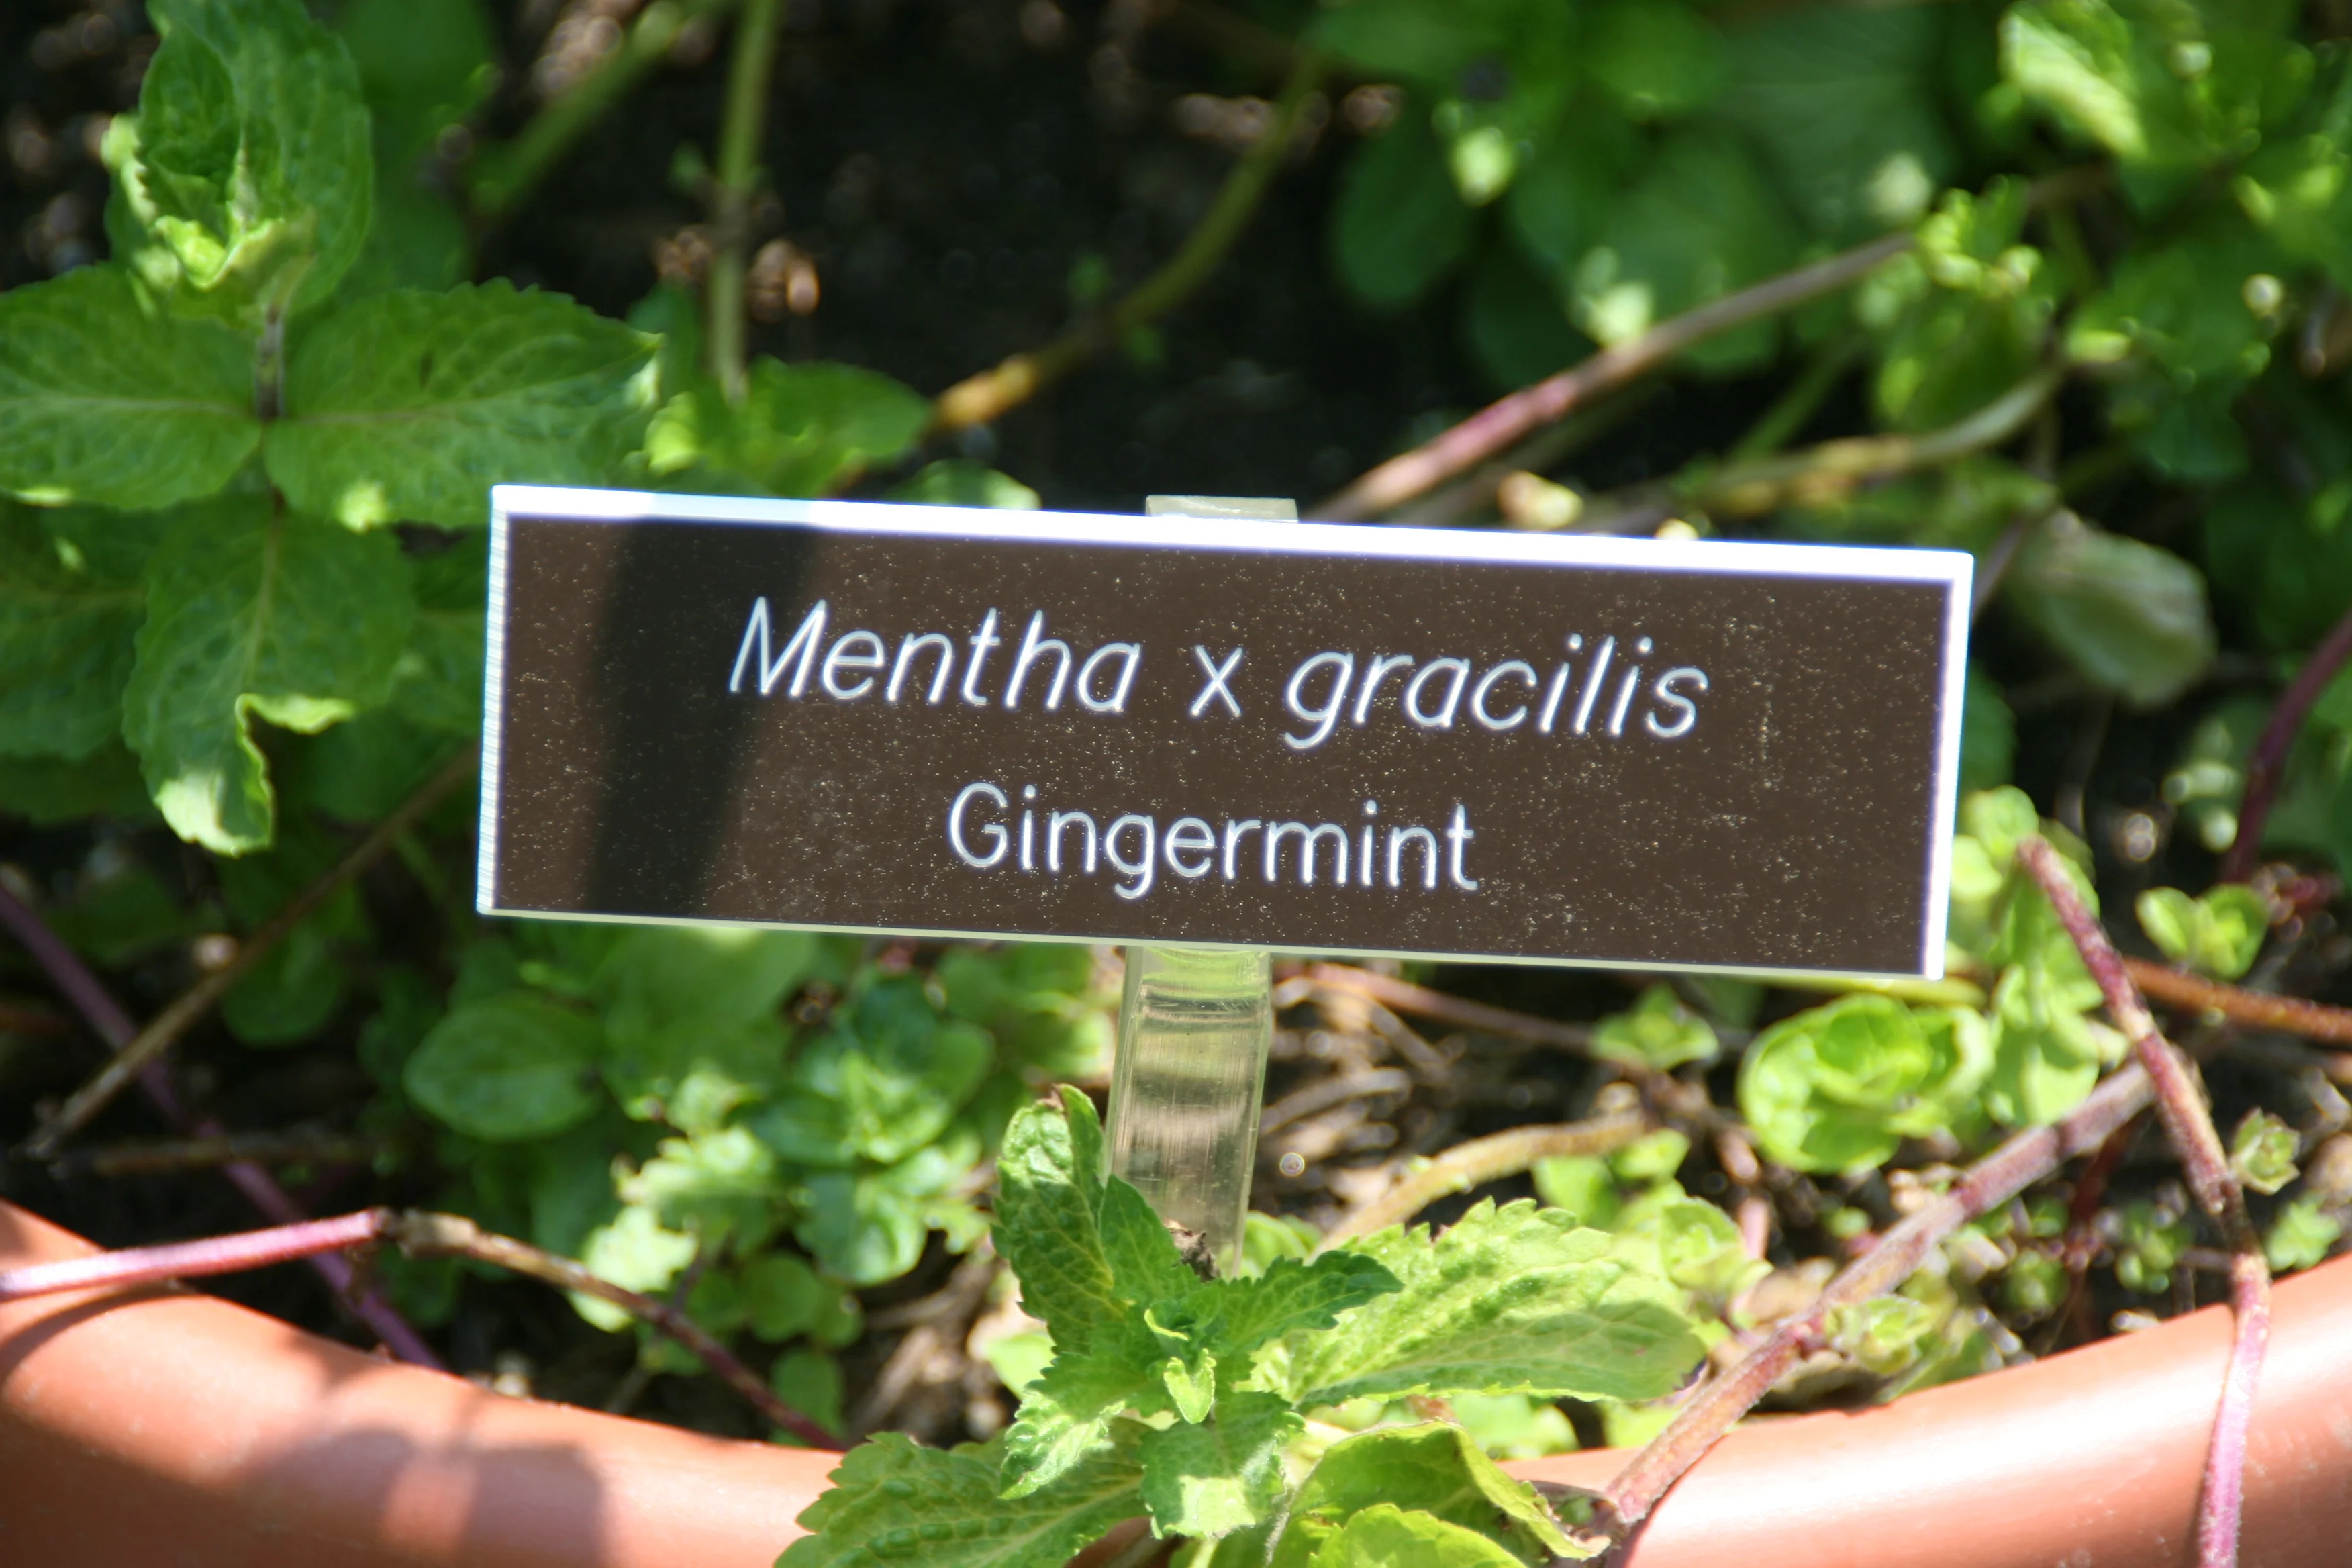 Ginger mint